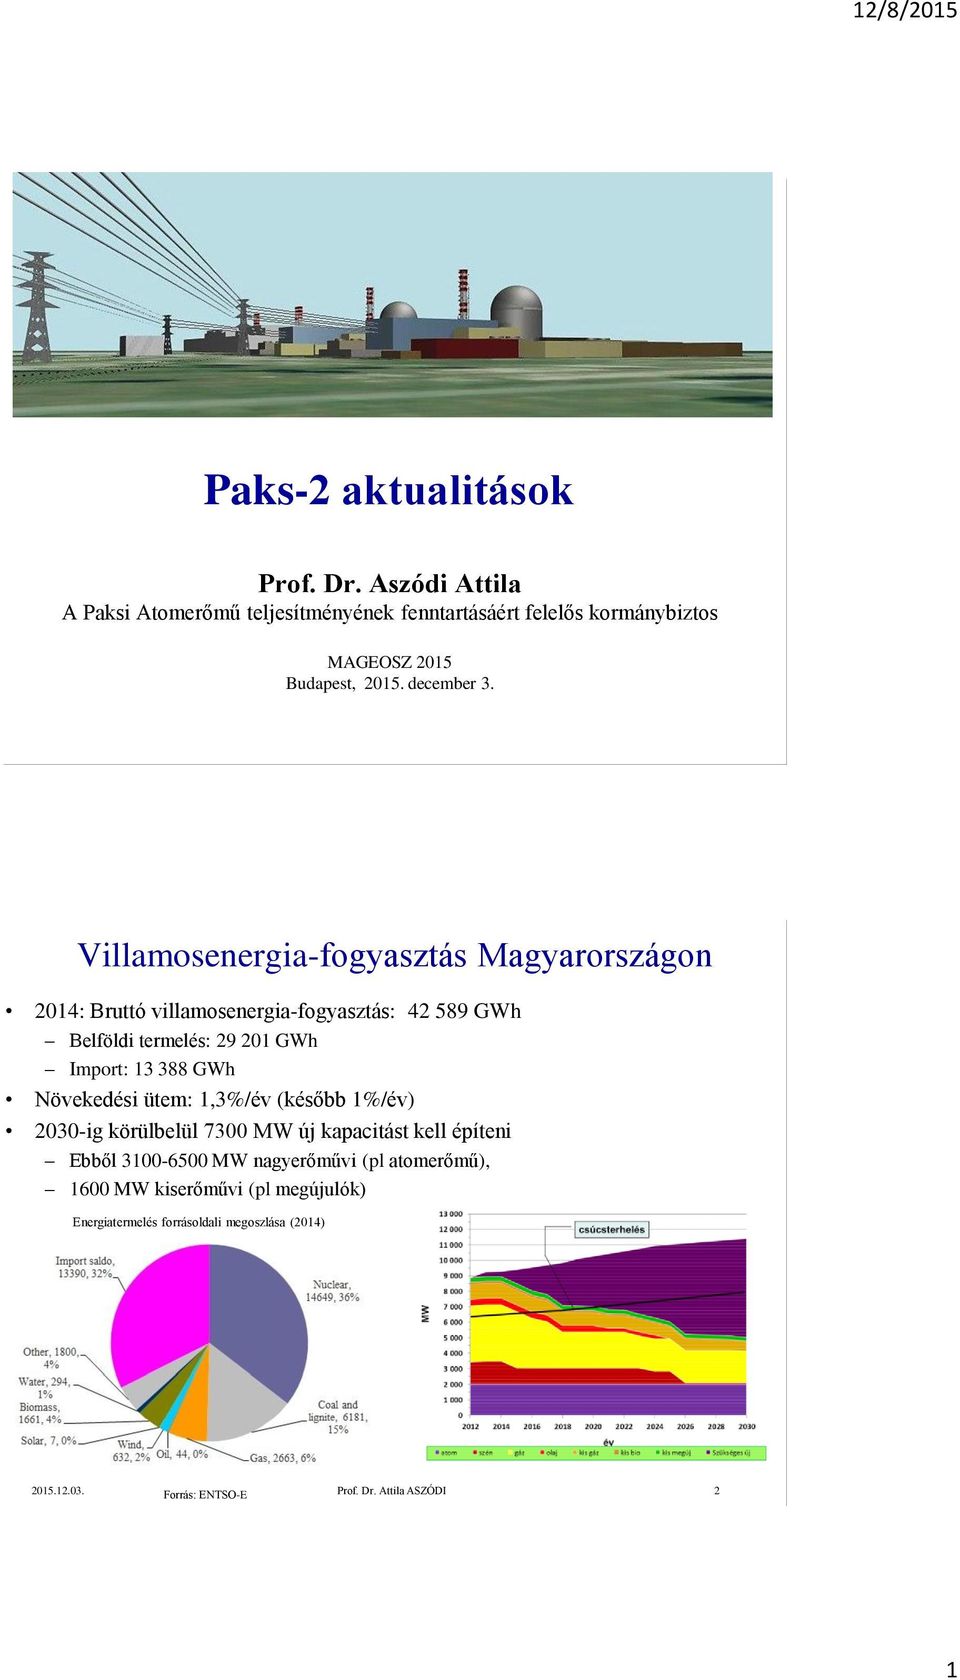 Villamosenergia-fogyasztás Magyarországon 2014: Bruttó villamosenergia-fogyasztás: 42 589 GWh Belföldi termelés: 29 201 GWh Import: 13 388